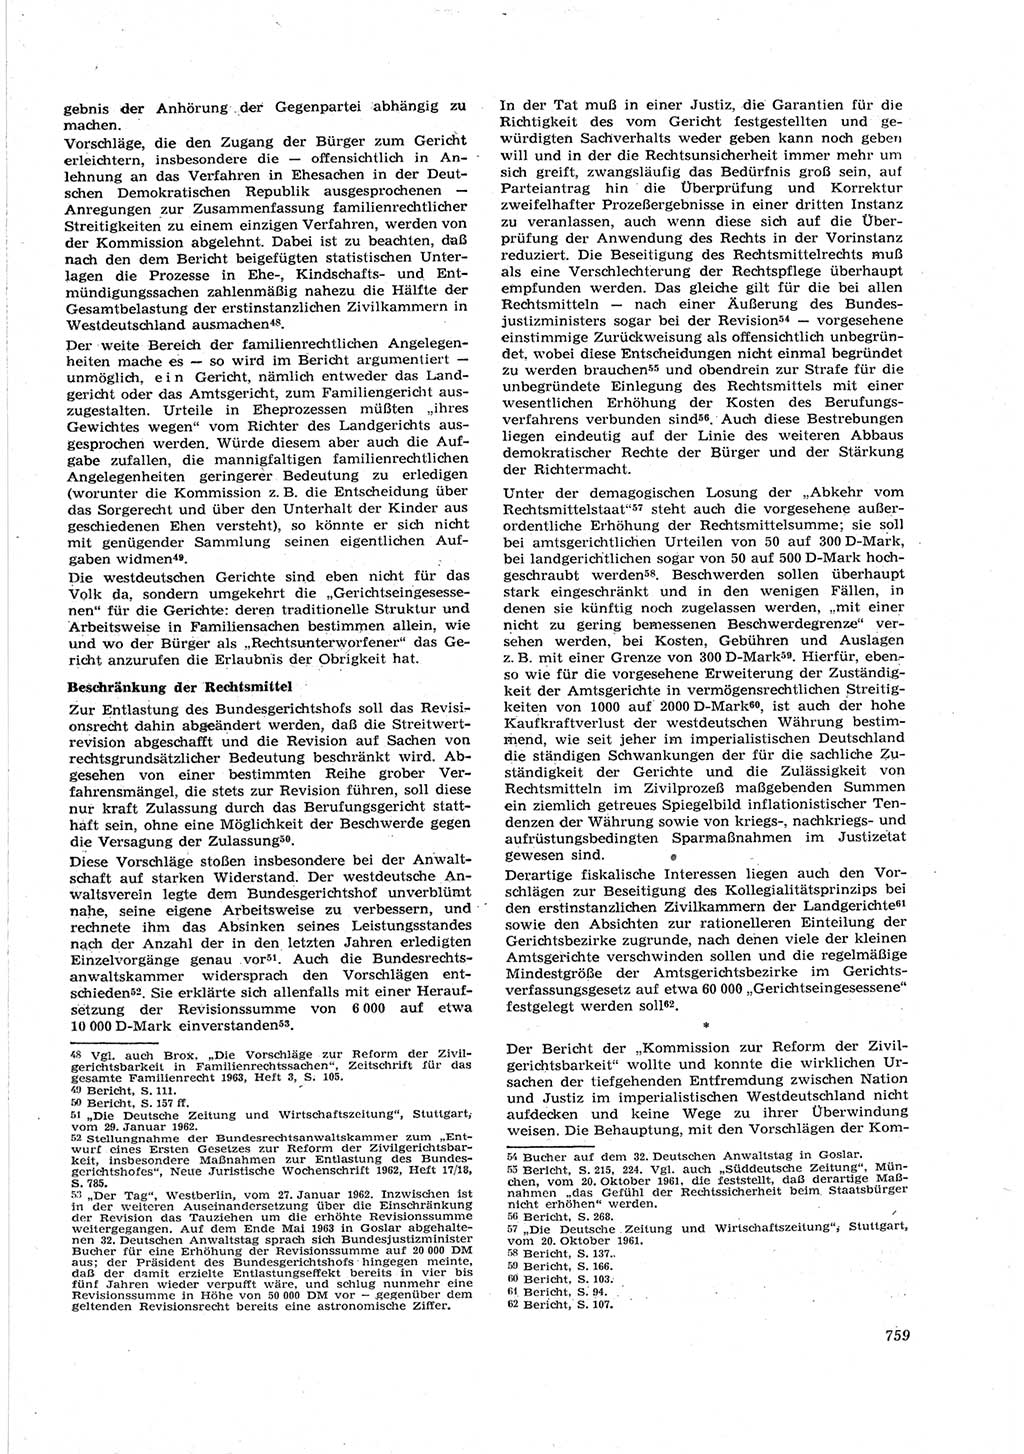 Neue Justiz (NJ), Zeitschrift für Recht und Rechtswissenschaft [Deutsche Demokratische Republik (DDR)], 17. Jahrgang 1963, Seite 759 (NJ DDR 1963, S. 759)